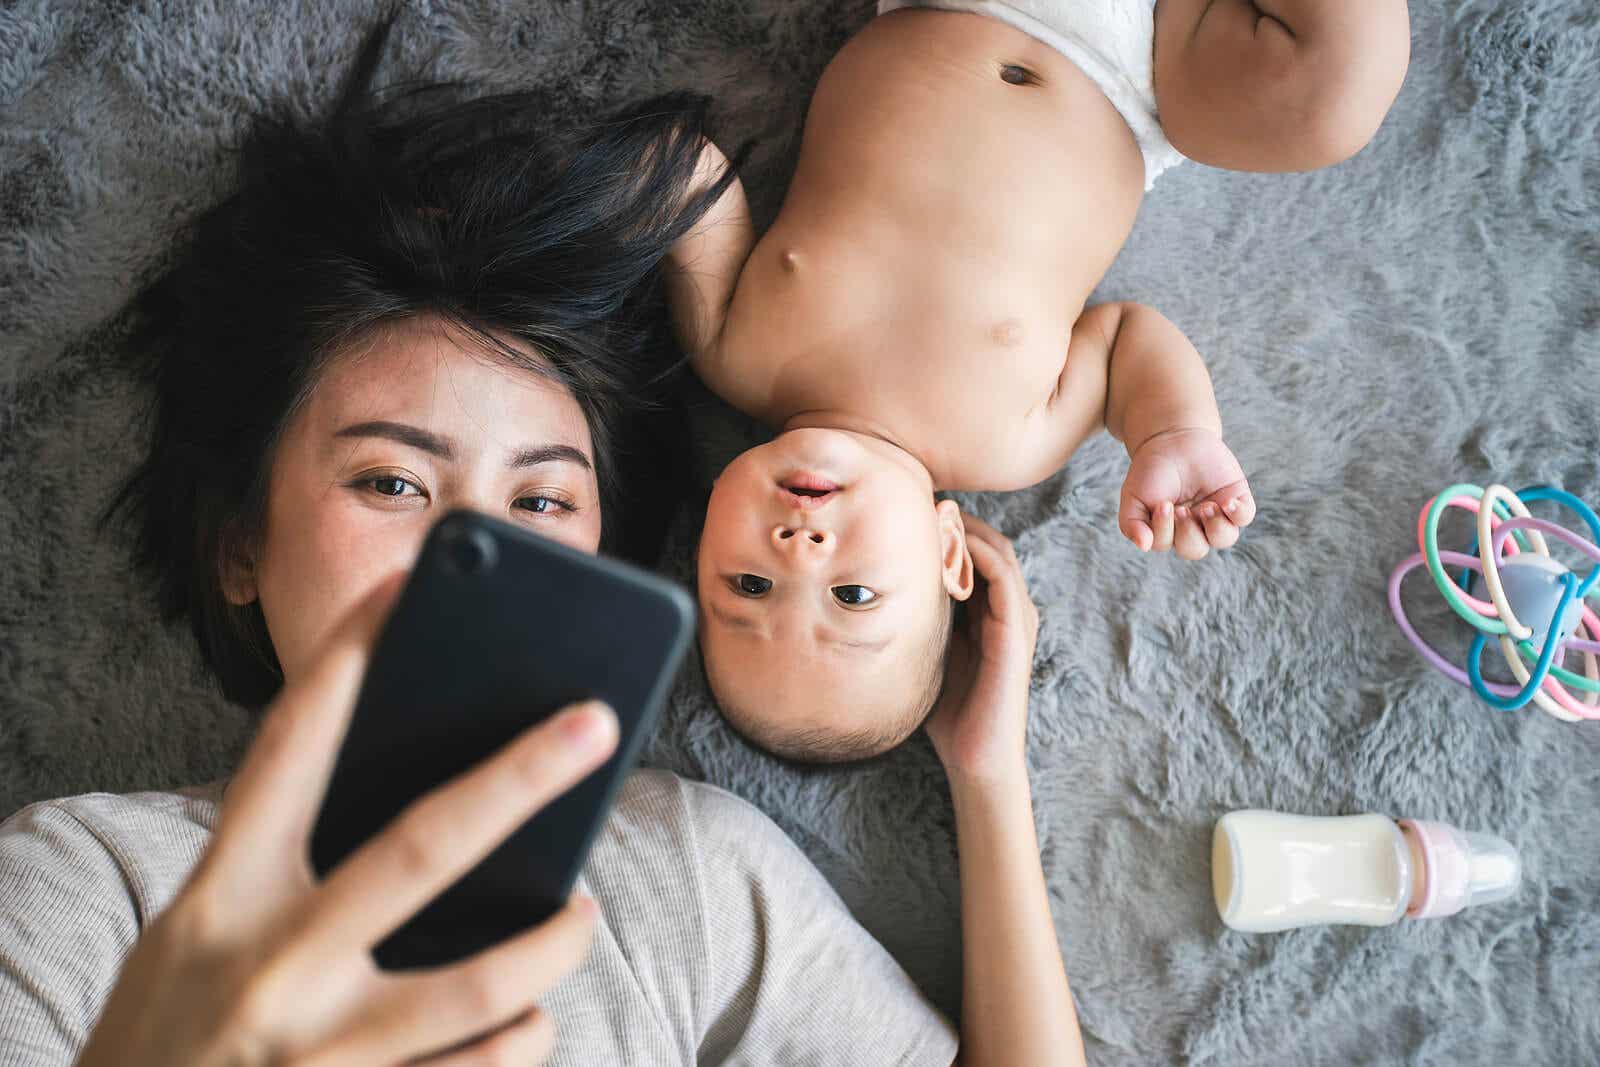 Matka robi sobie selfie z dzieckiem.